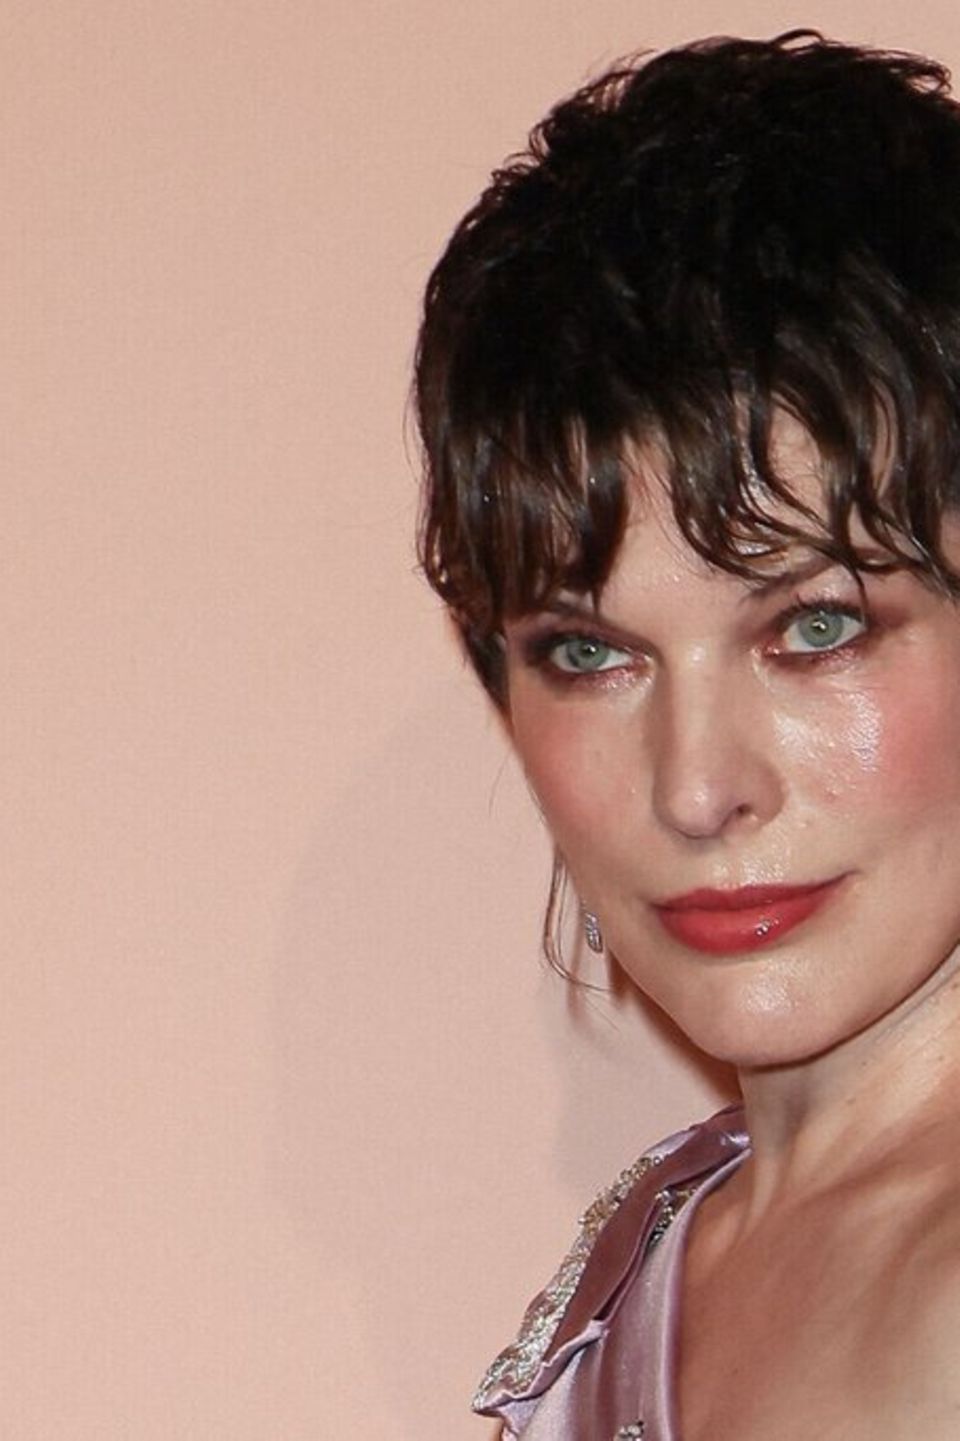 Milla Jovovich spielte 1997 an der Seite von Bruce Willis in "Das fünfte Element".